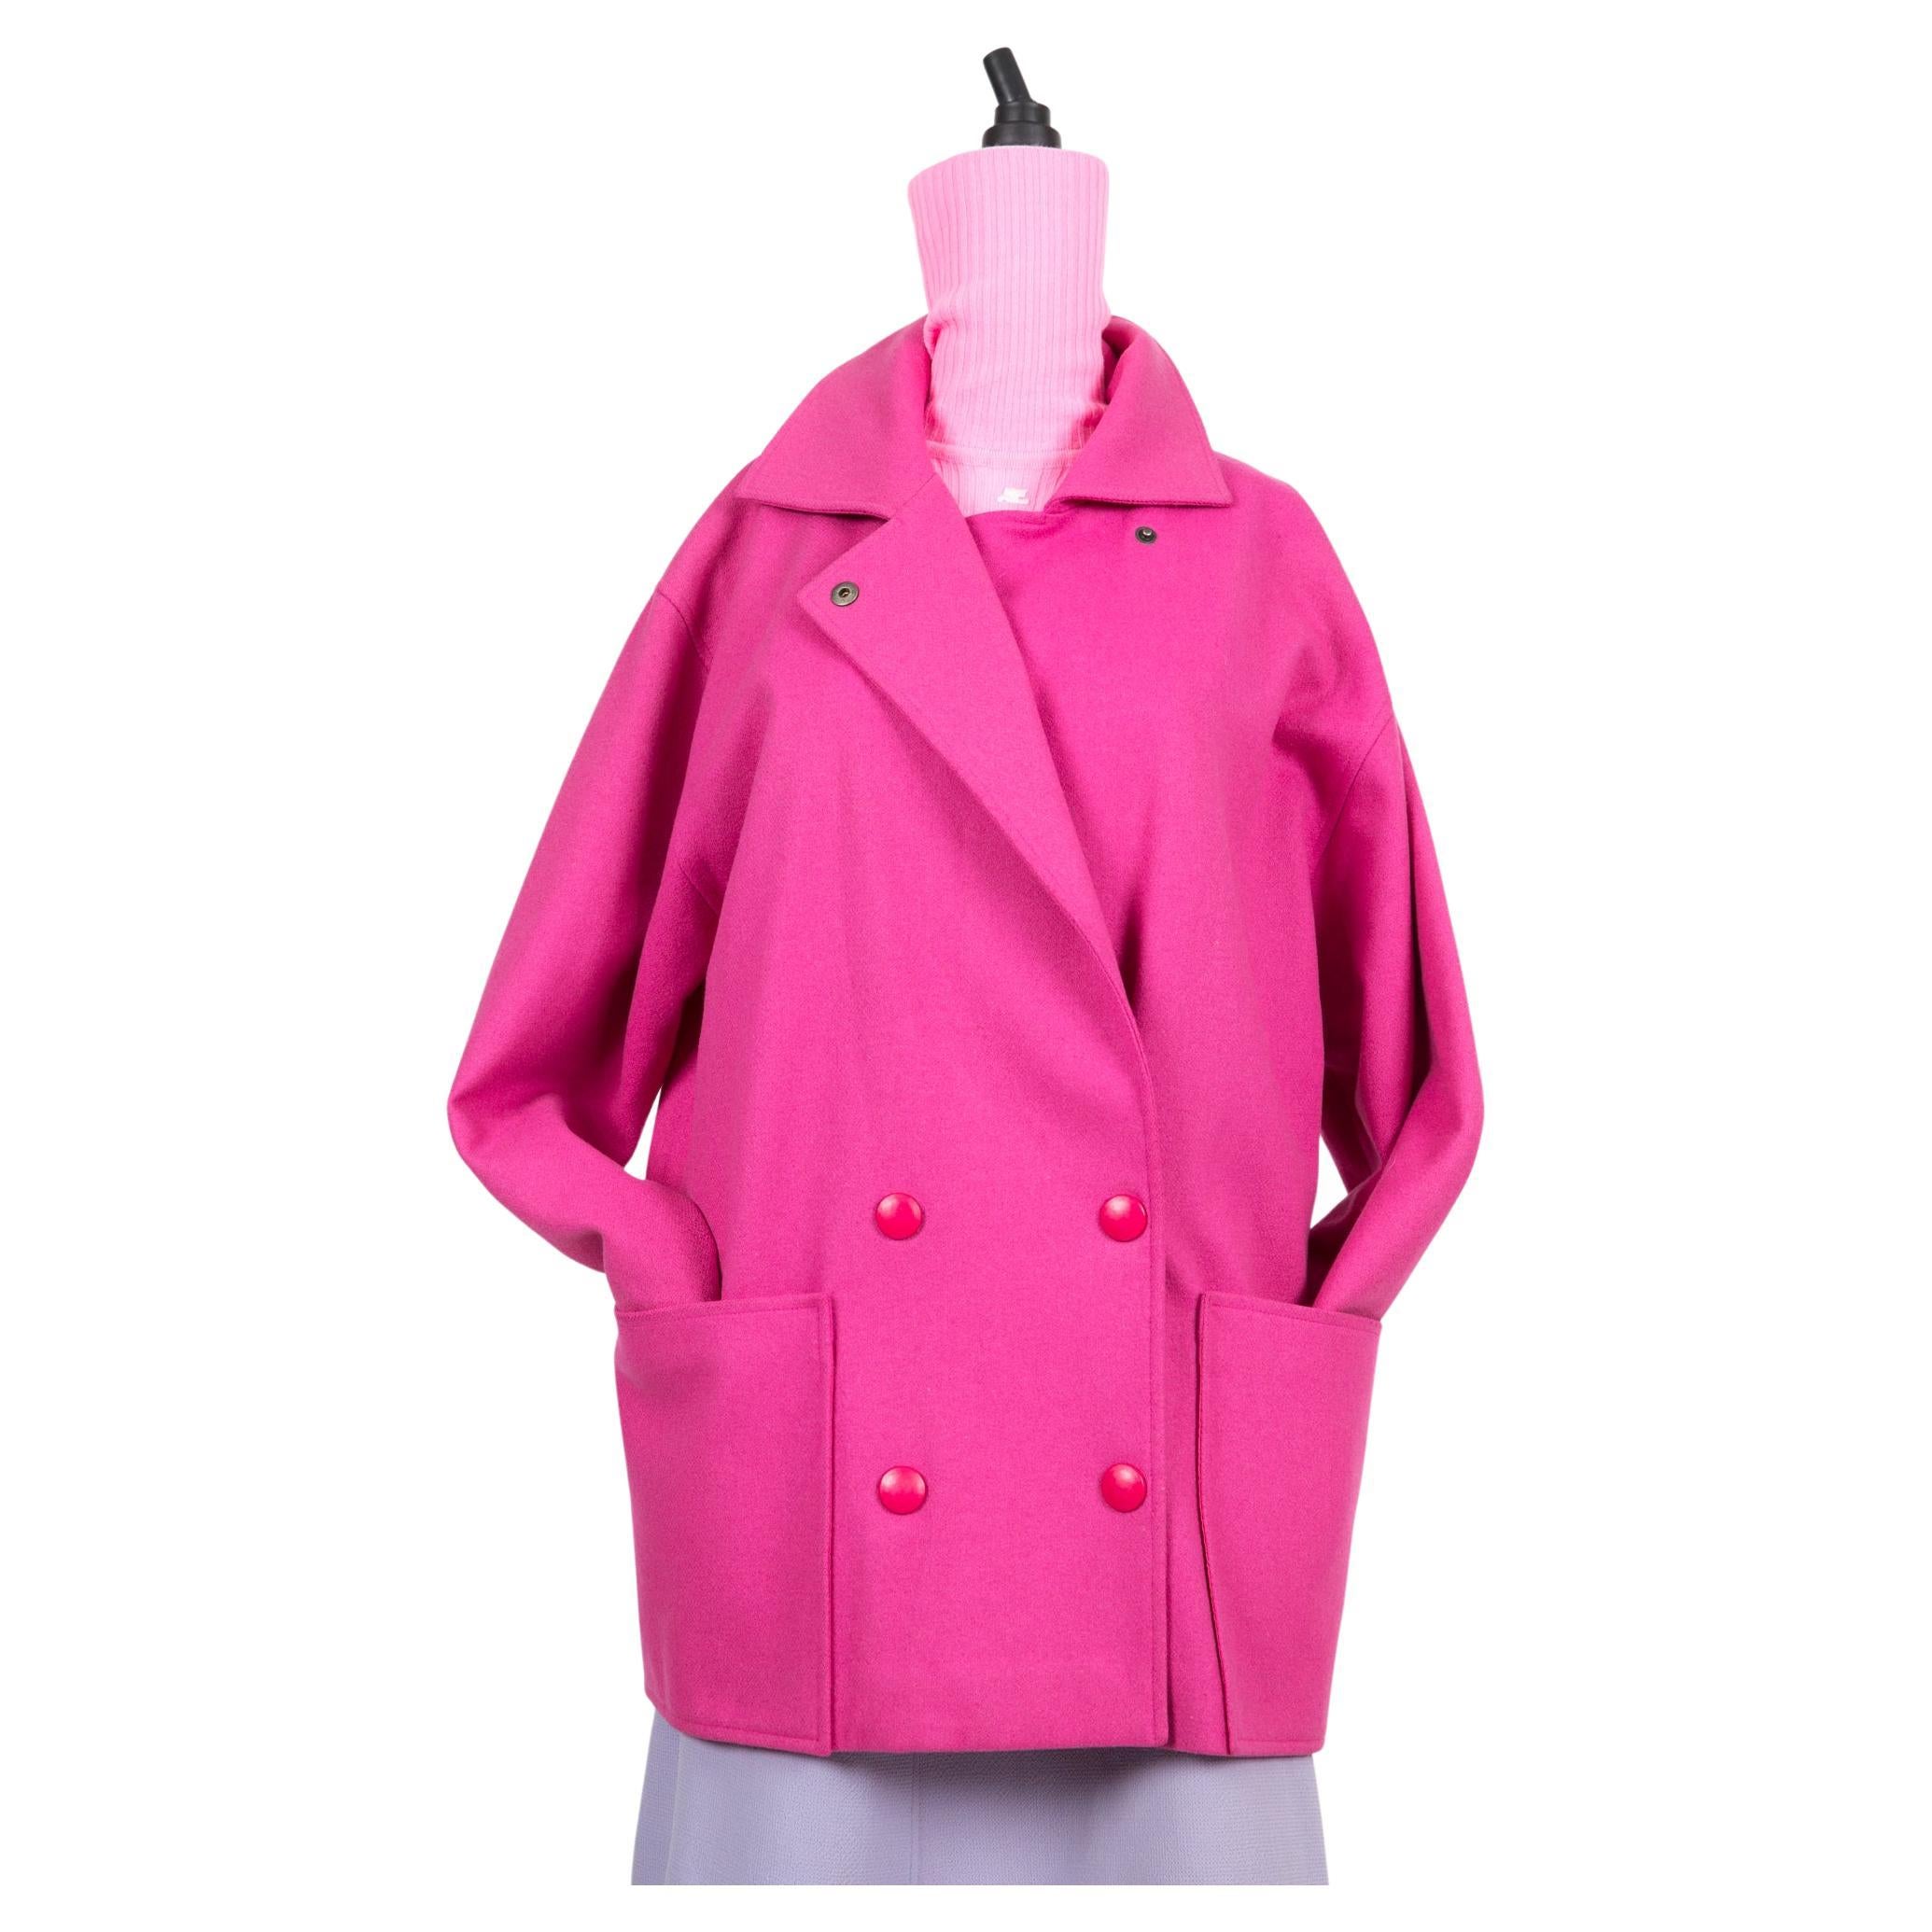 Pierre Cardin Pink Wool Coat 1980s